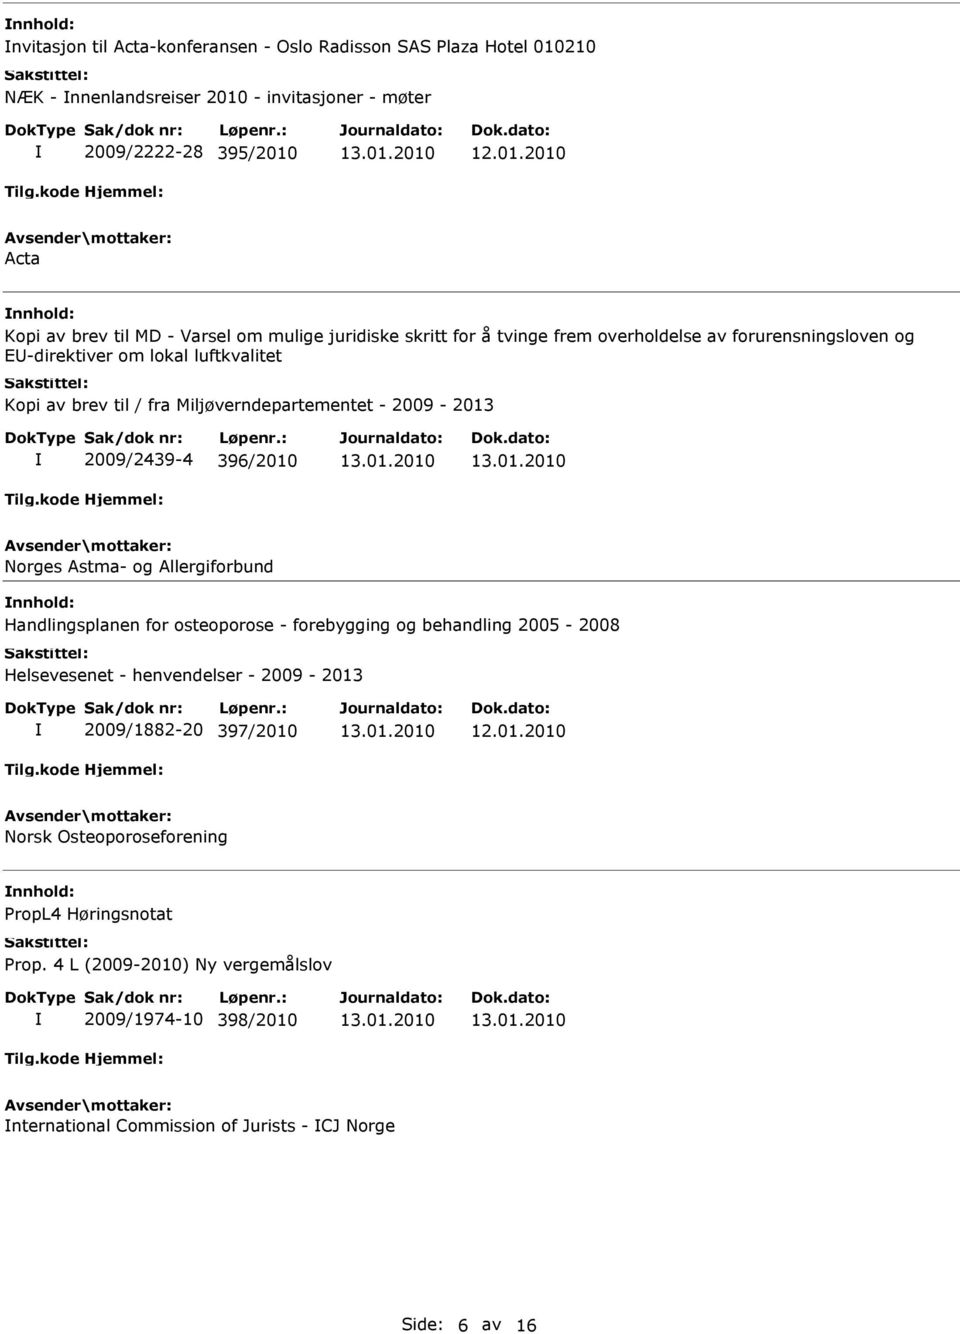 2009/2439-4 396/2010 Norges Astma- og Allergiforbund Handlingsplanen for osteoporose - forebygging og behandling 2005-2008 Helsevesenet - henvendelser - 2009-2013 2009/1882-20